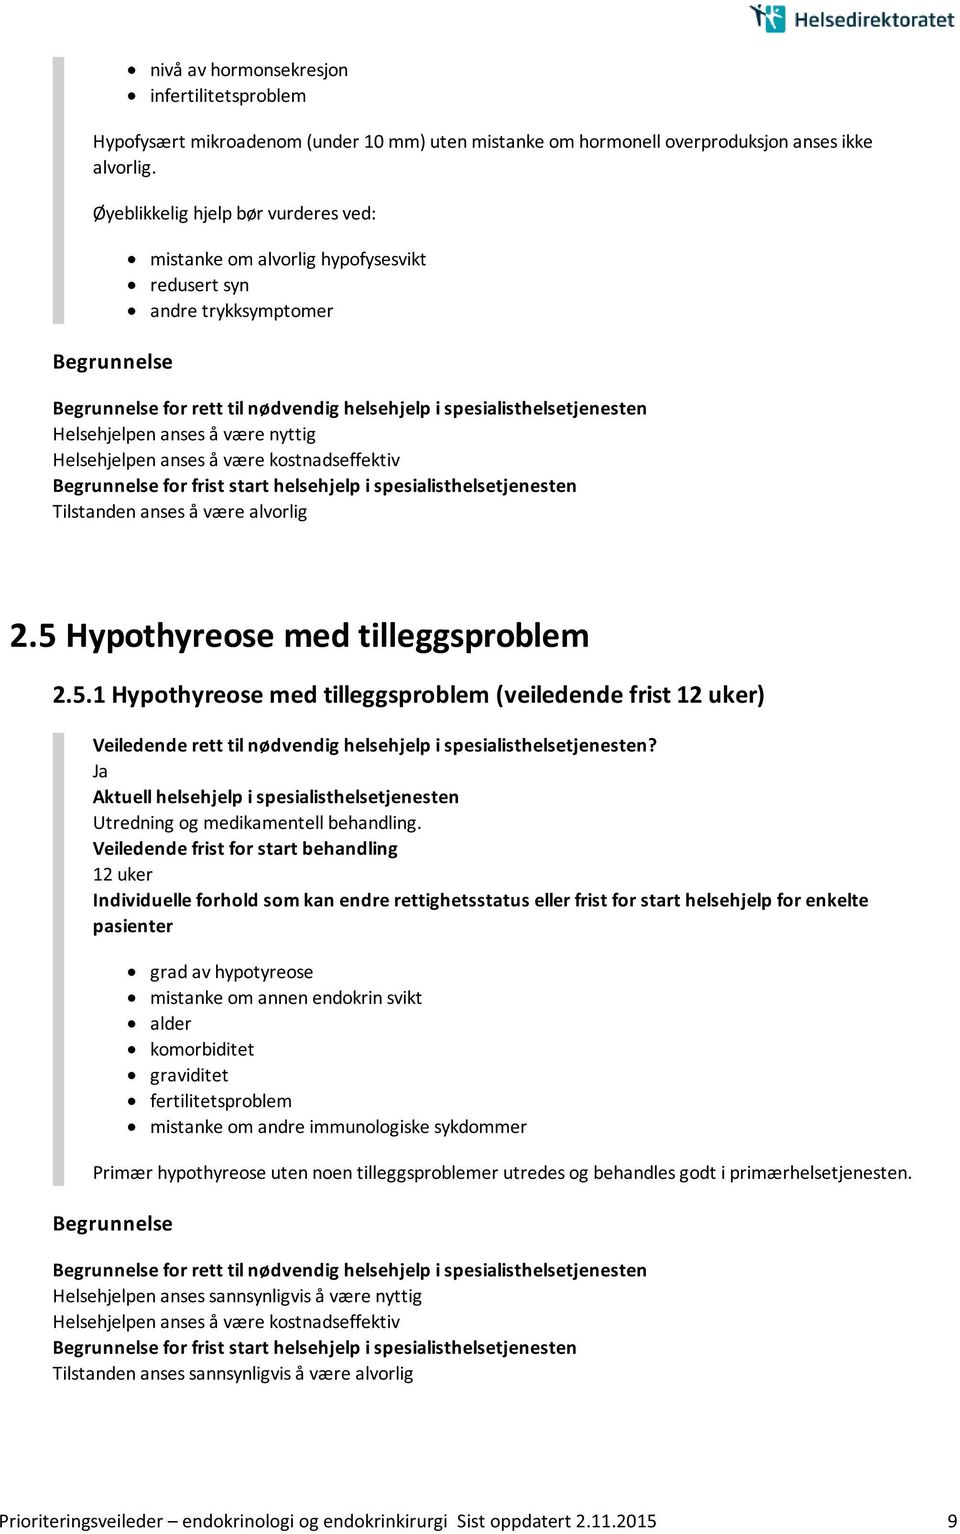 Hypothyreose med tilleggsproblem 2.5.1 Hypothyreose med tilleggsproblem (veiledende frist 12 uker) Utredning og medikamentell behandling.